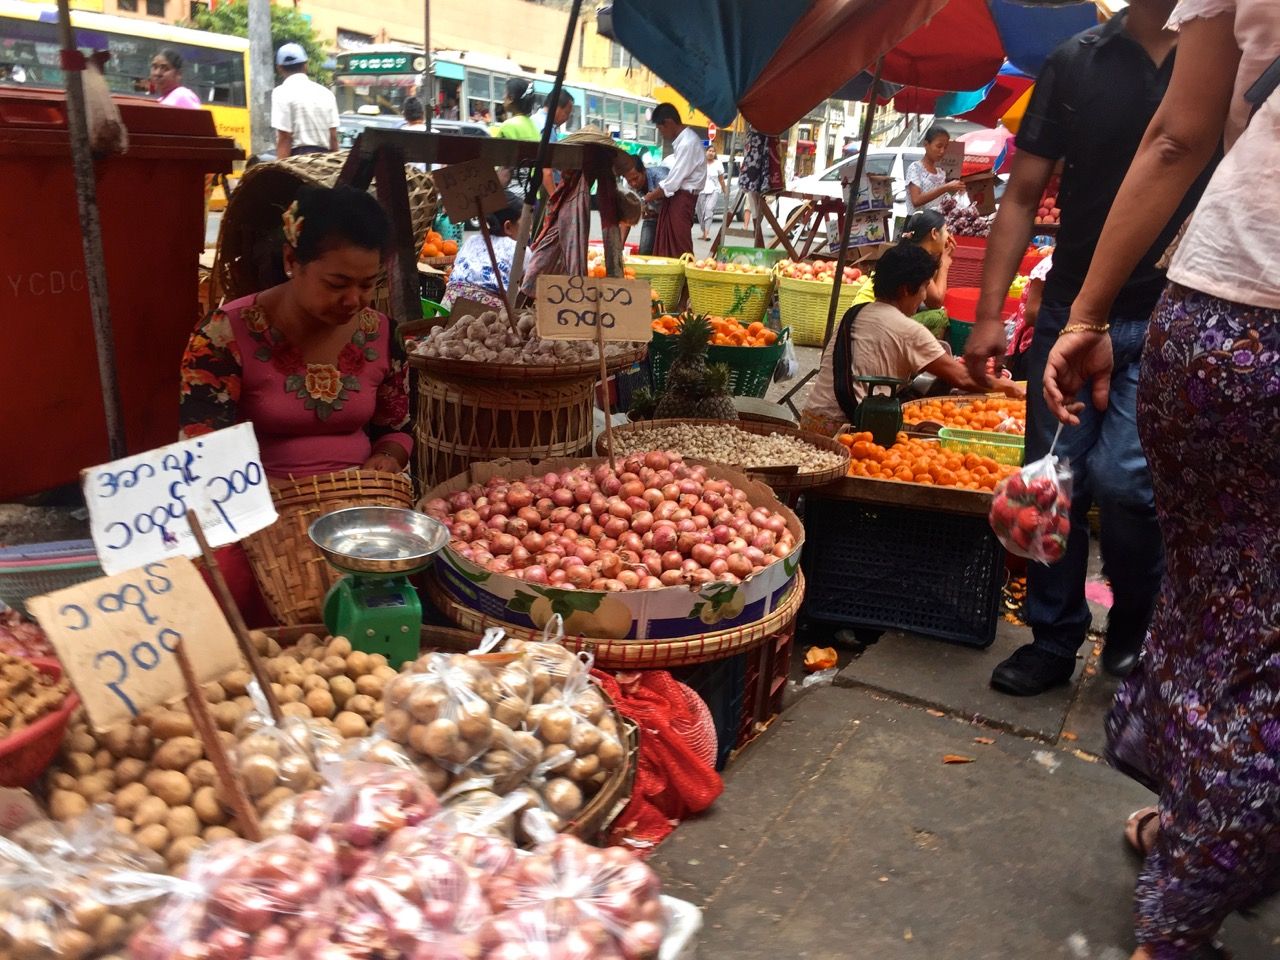 Woman selling various vegetables.